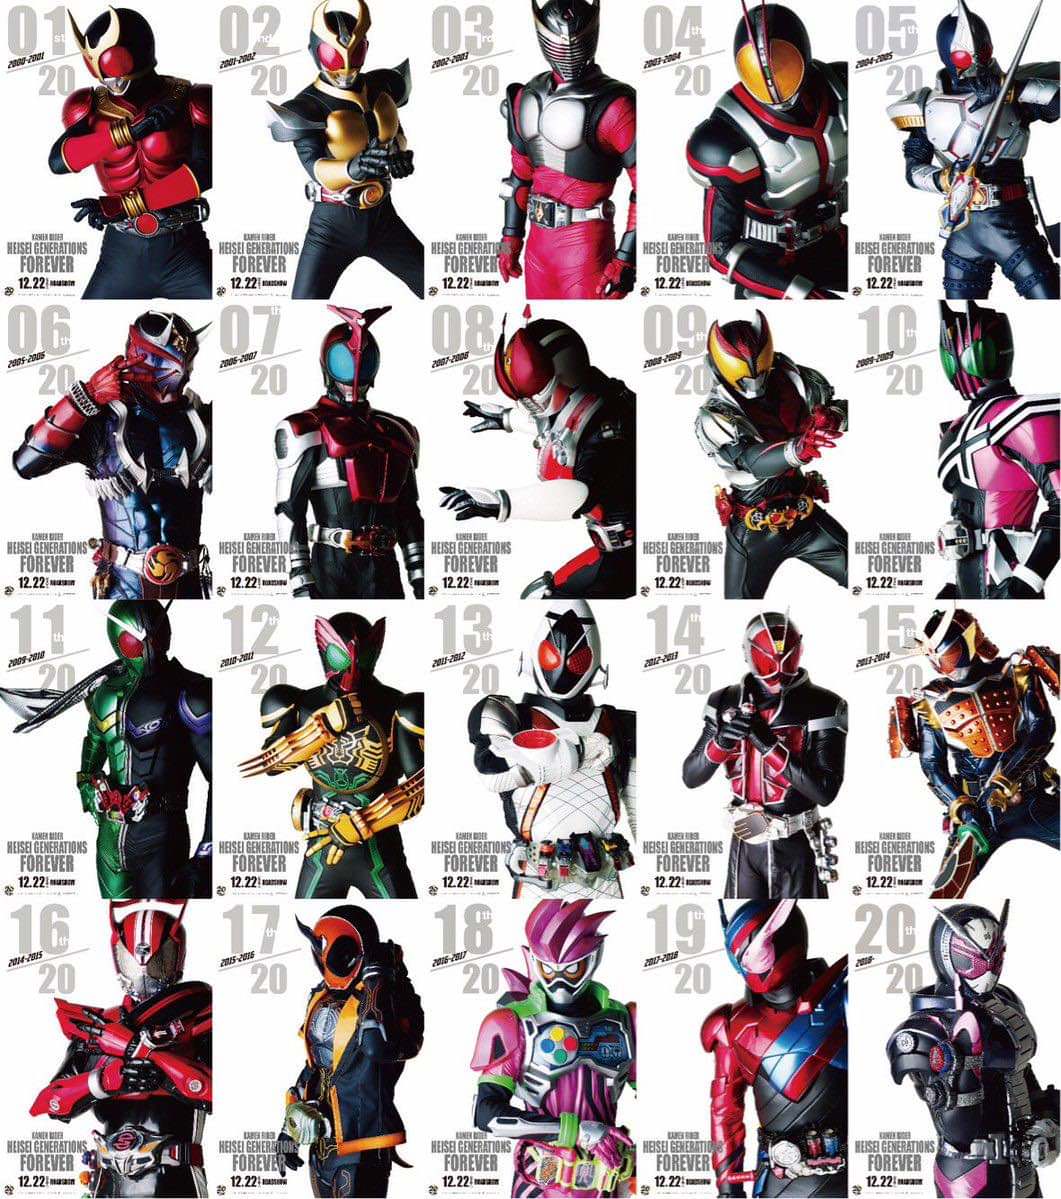 Heisei Kamen Rider characters